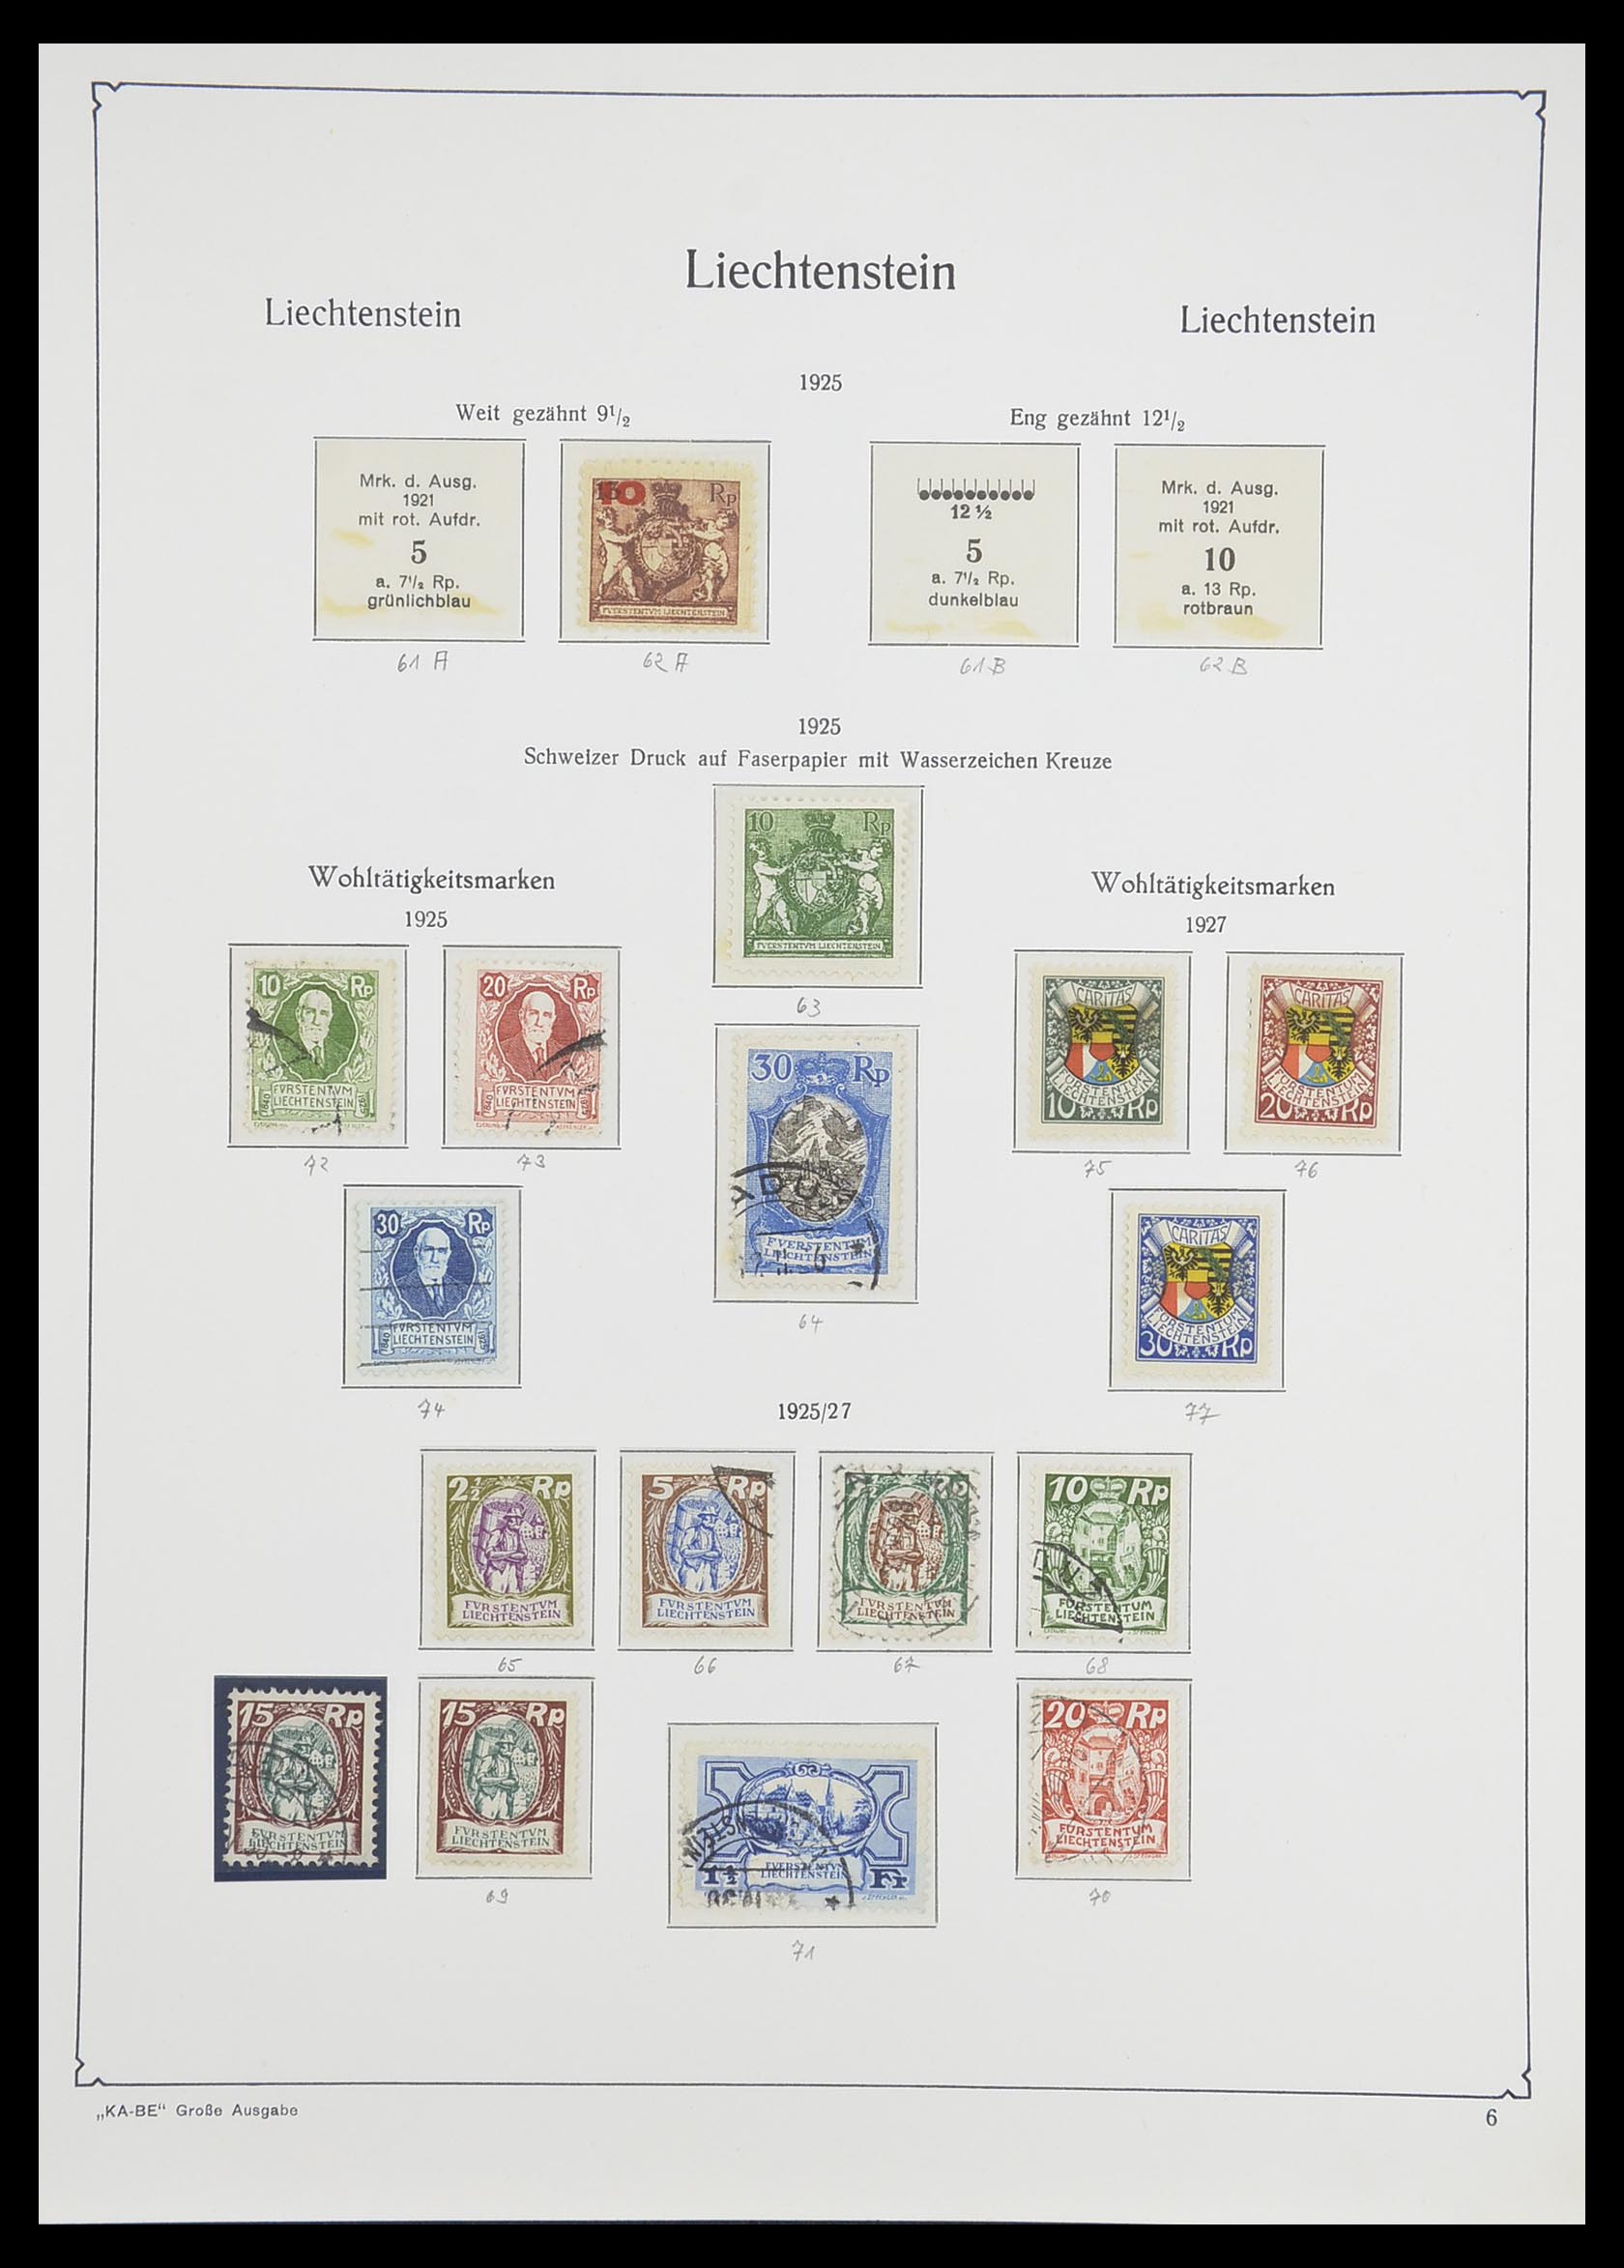 33493 009 - Stamp collection 33493 Liechtenstein 1912-2008.